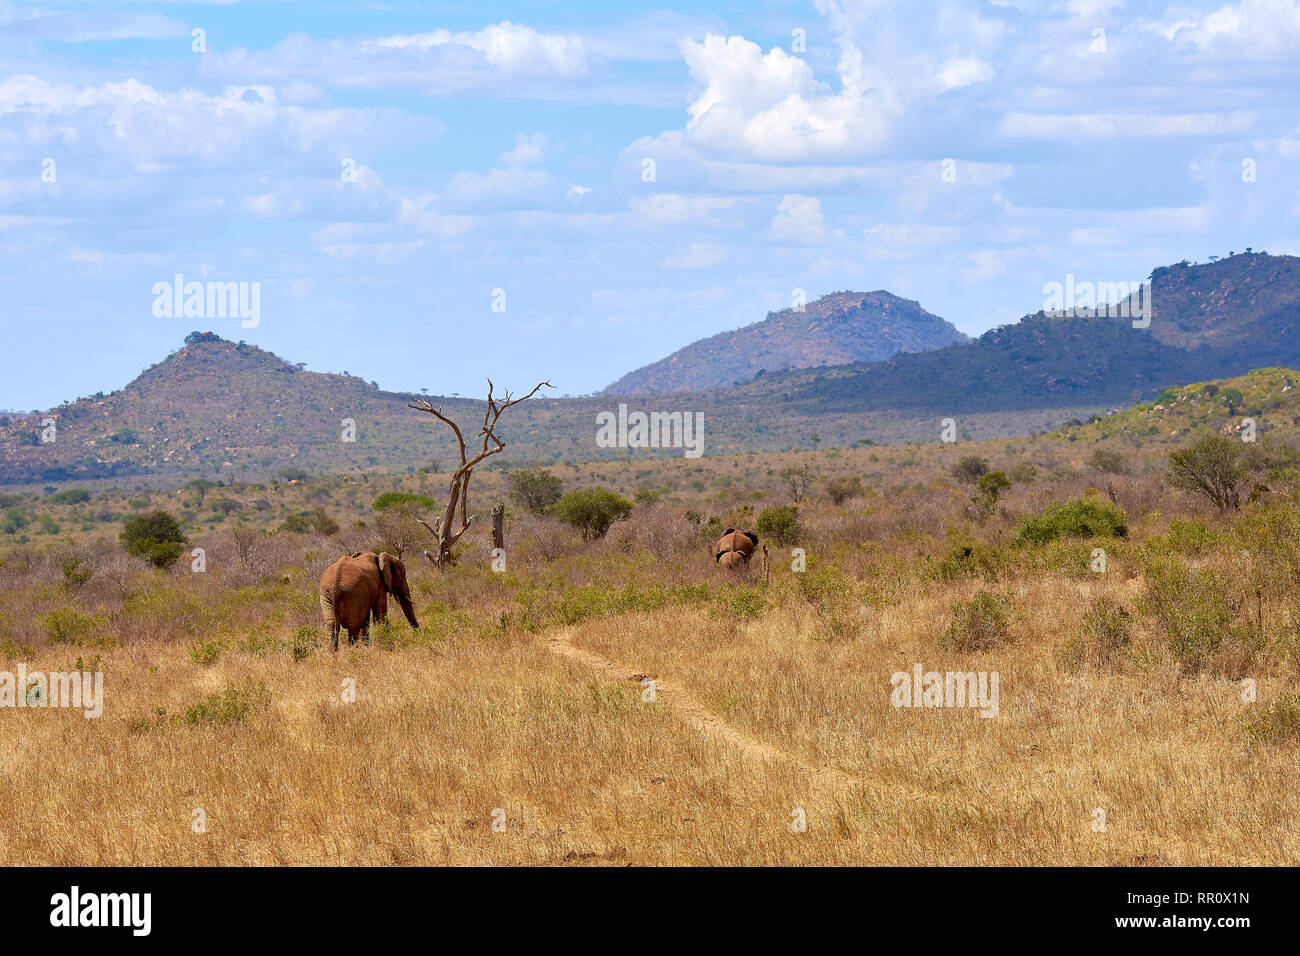 Anzeigen von zwei afrikanischen Elefanten Savanne geht auf Safari in Kenia, mit unscharfen Bäume und Berge im Hintergrund Stockfoto